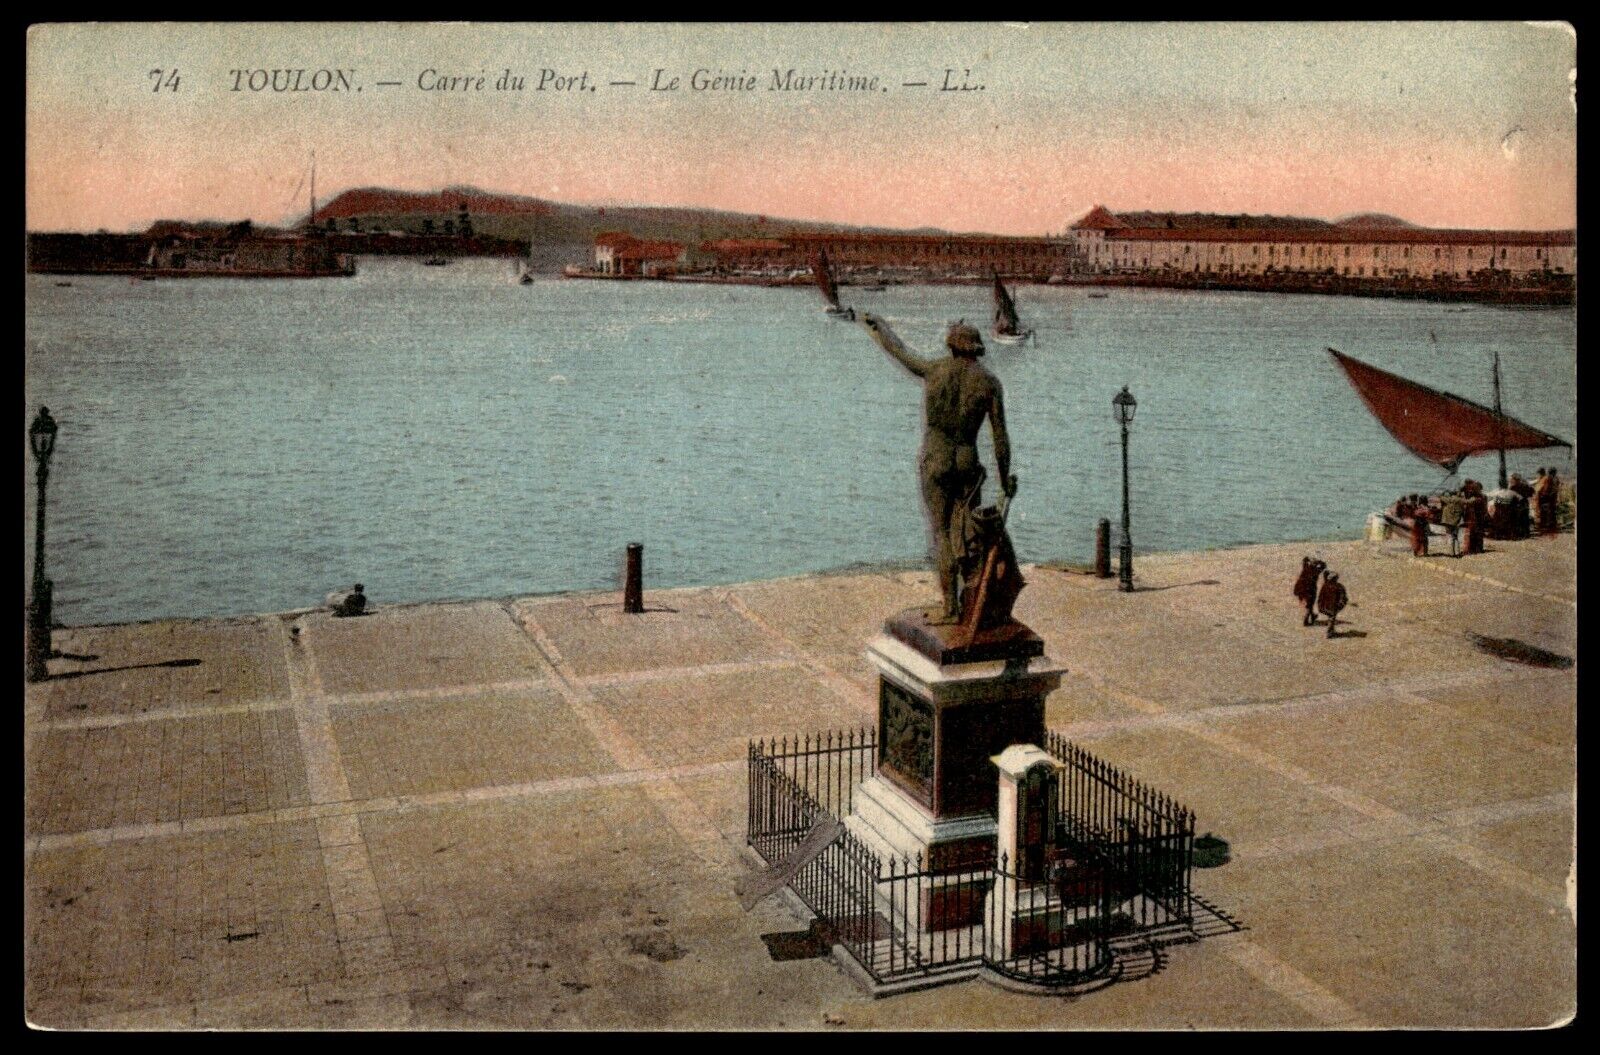 Postcard Carre du Port Genius of Navigation statue Toulon France colorized